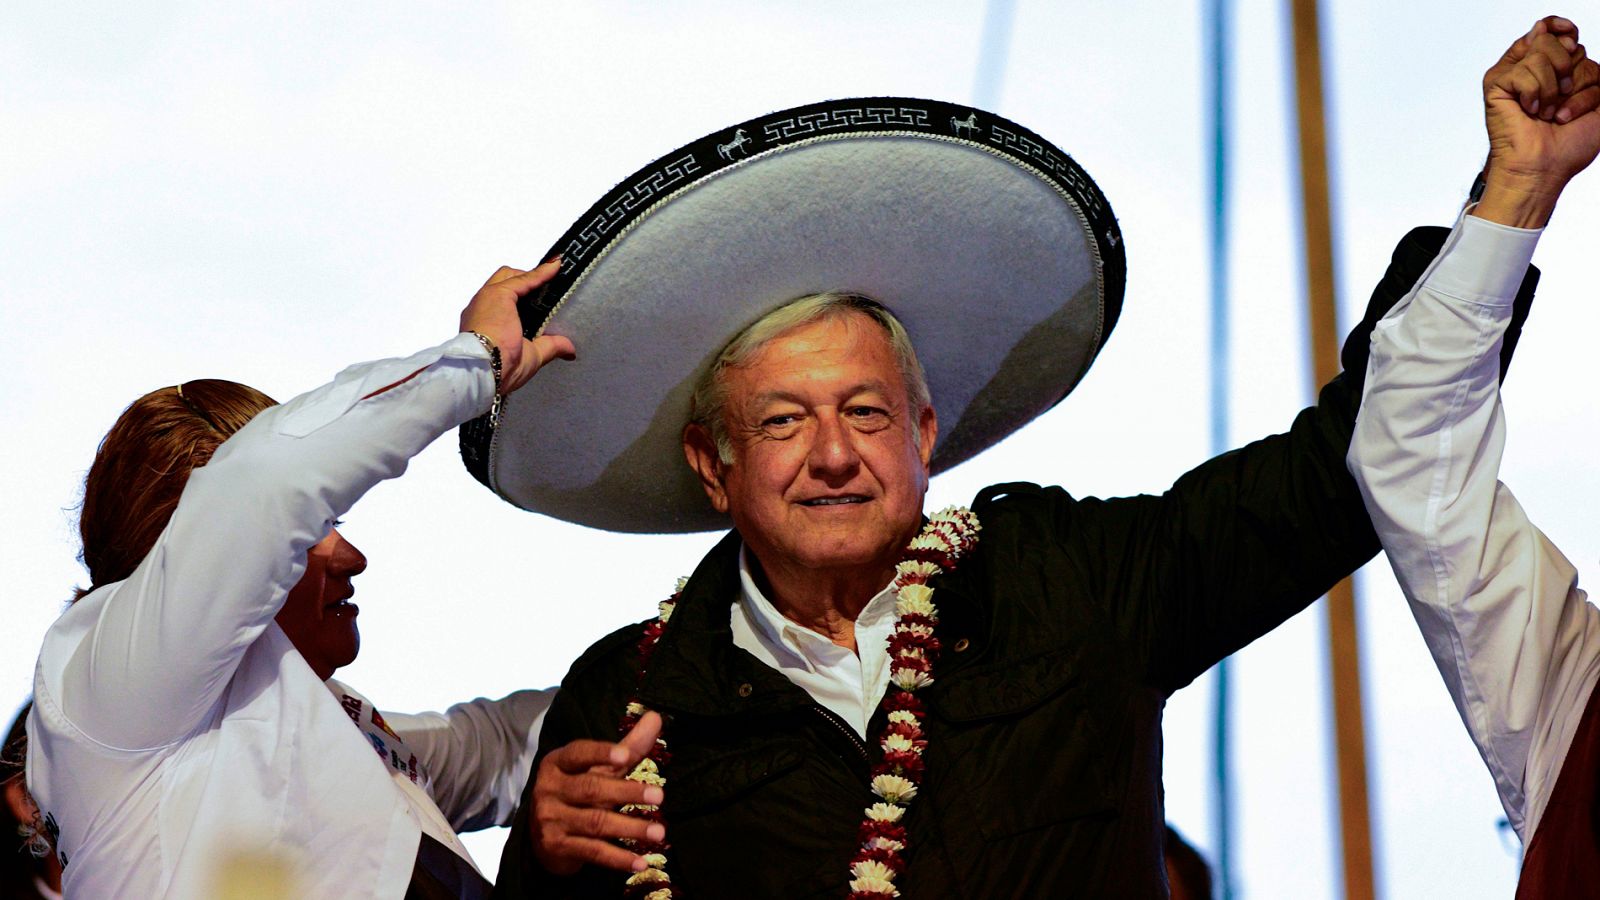 Telediario 1: López Obrador llega a la presidencia de México para combatir la corrupción y reducir la pobreza, la desigualdad y la violencia | RTVE Play